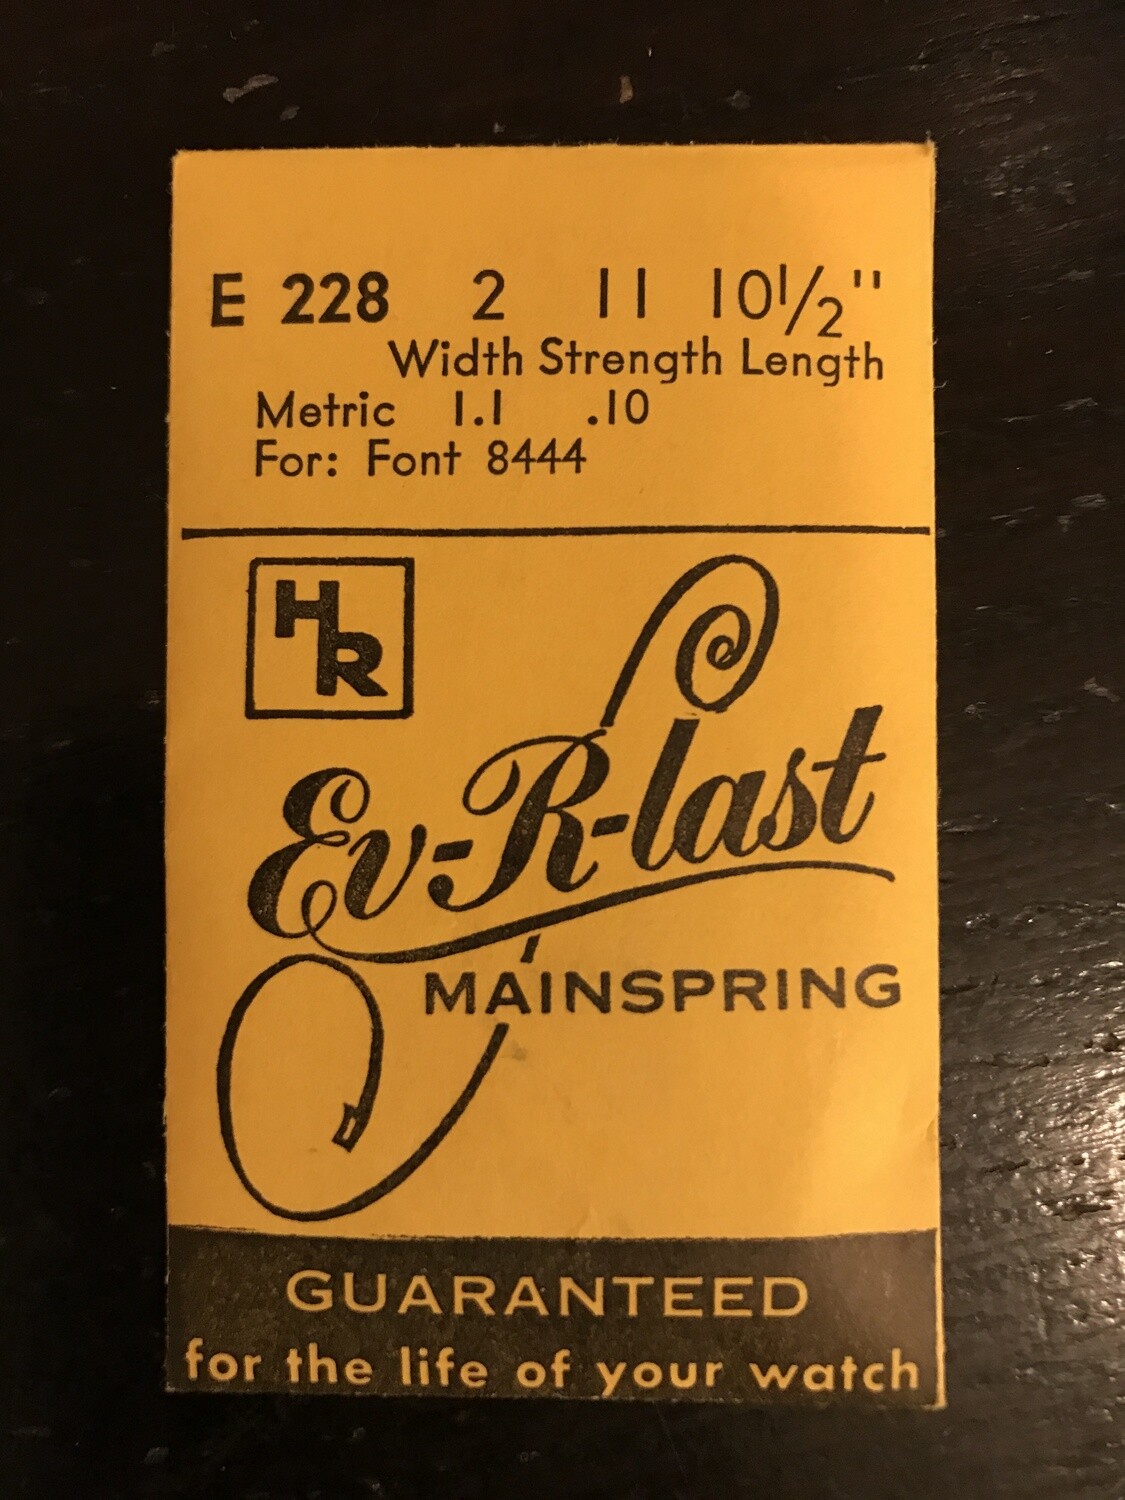 HR Ev-R-Last Mainspring E228 for Font 8444 - Steel